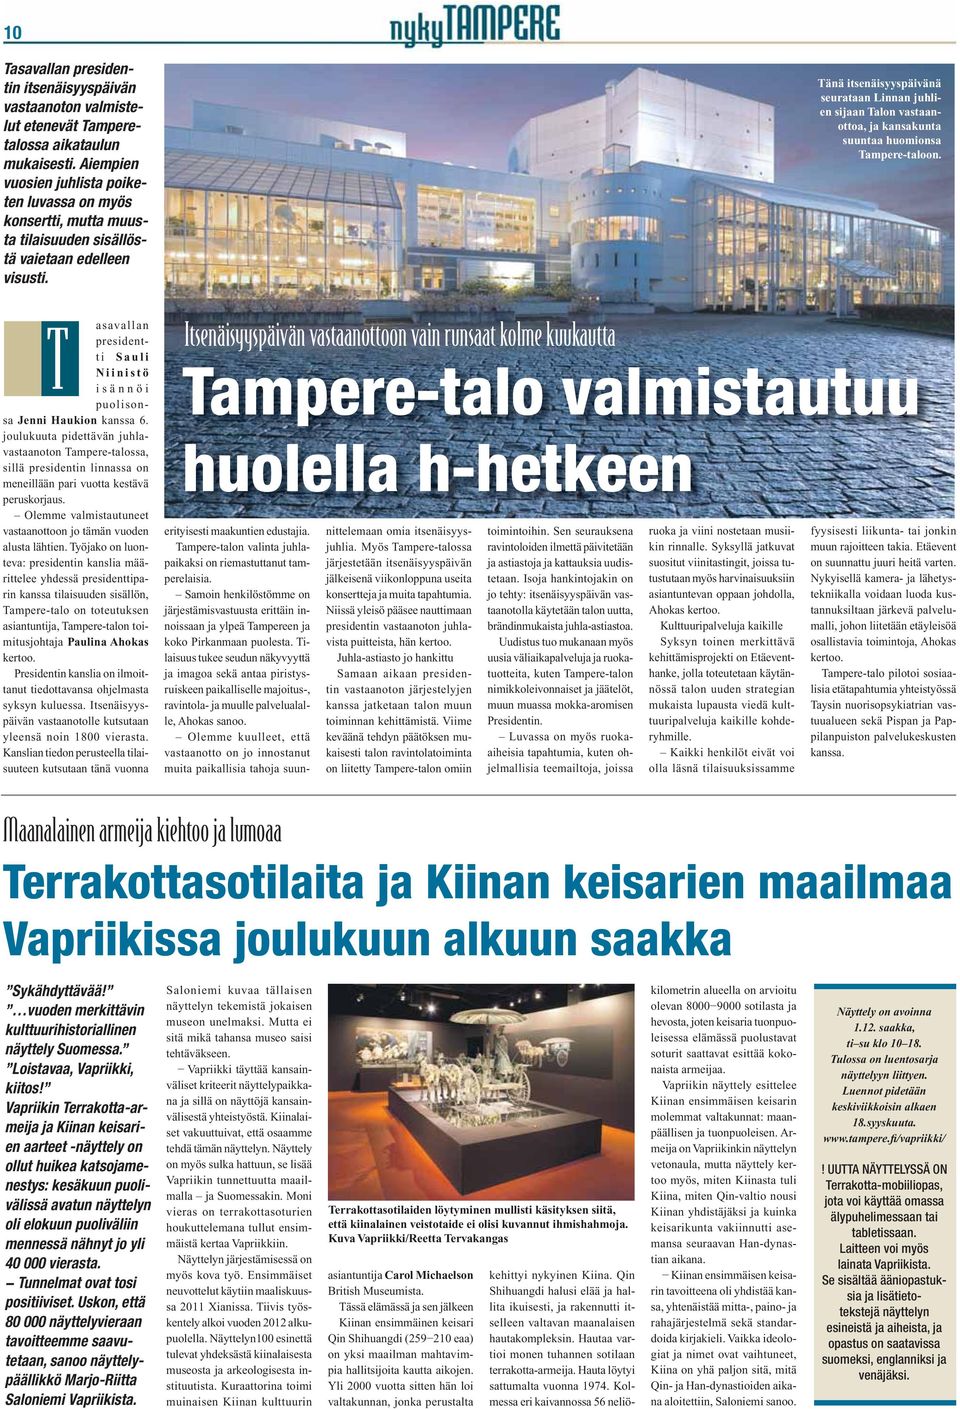 Tänä itsenäisyyspäivänä seurataan Linnan juhlien sijaan Talon vastaanottoa, ja kansakunta suuntaa huomionsa Tampere-taloon.